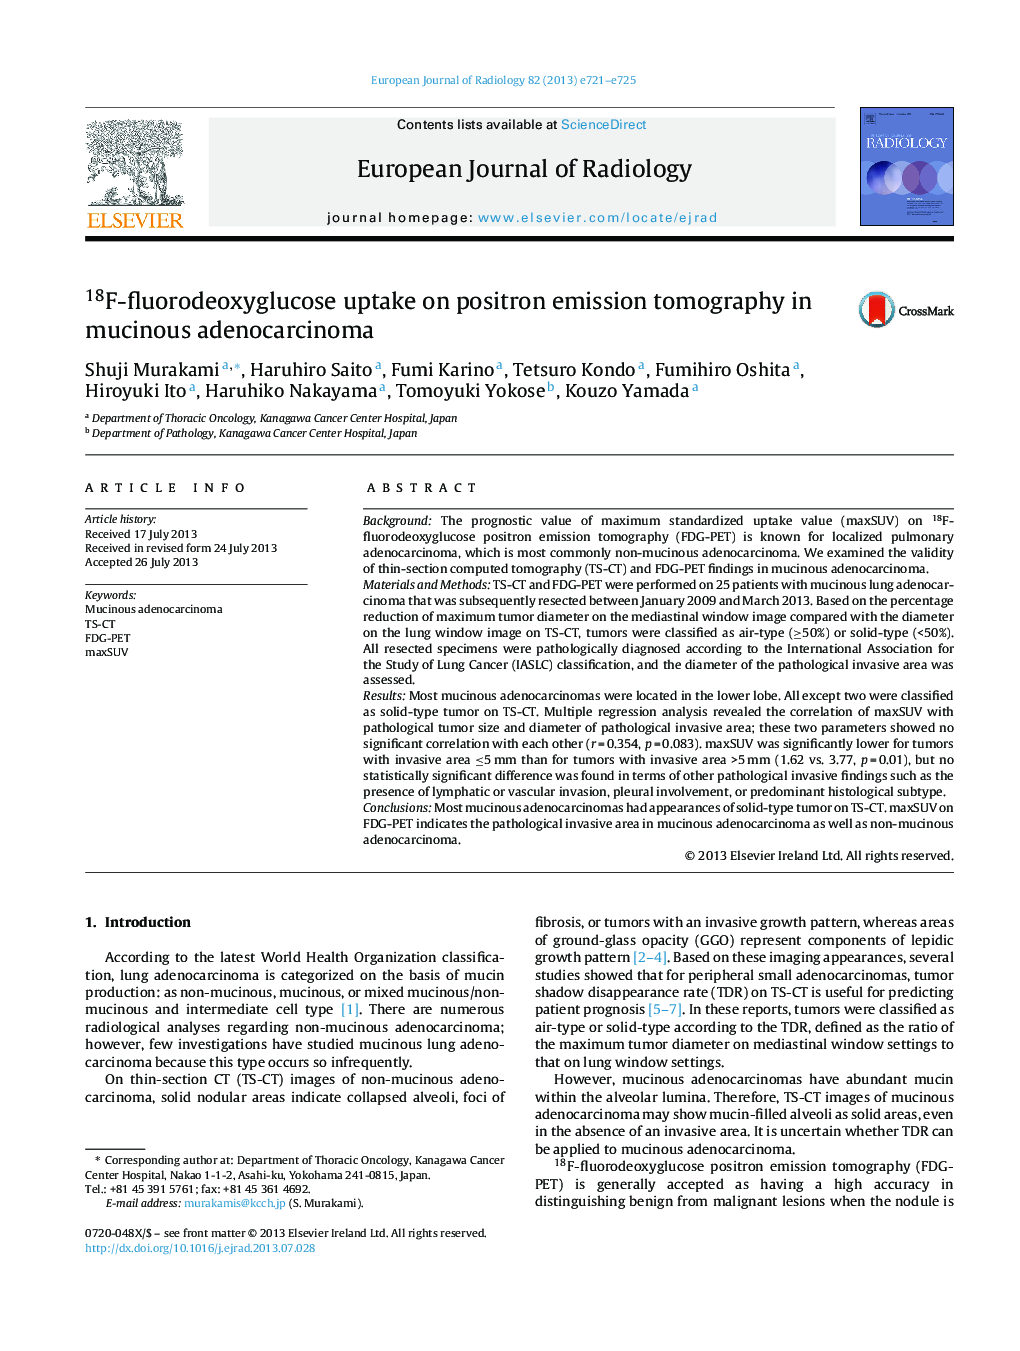 18F-fluorodeoxyglucose uptake on positron emission tomography in mucinous adenocarcinoma